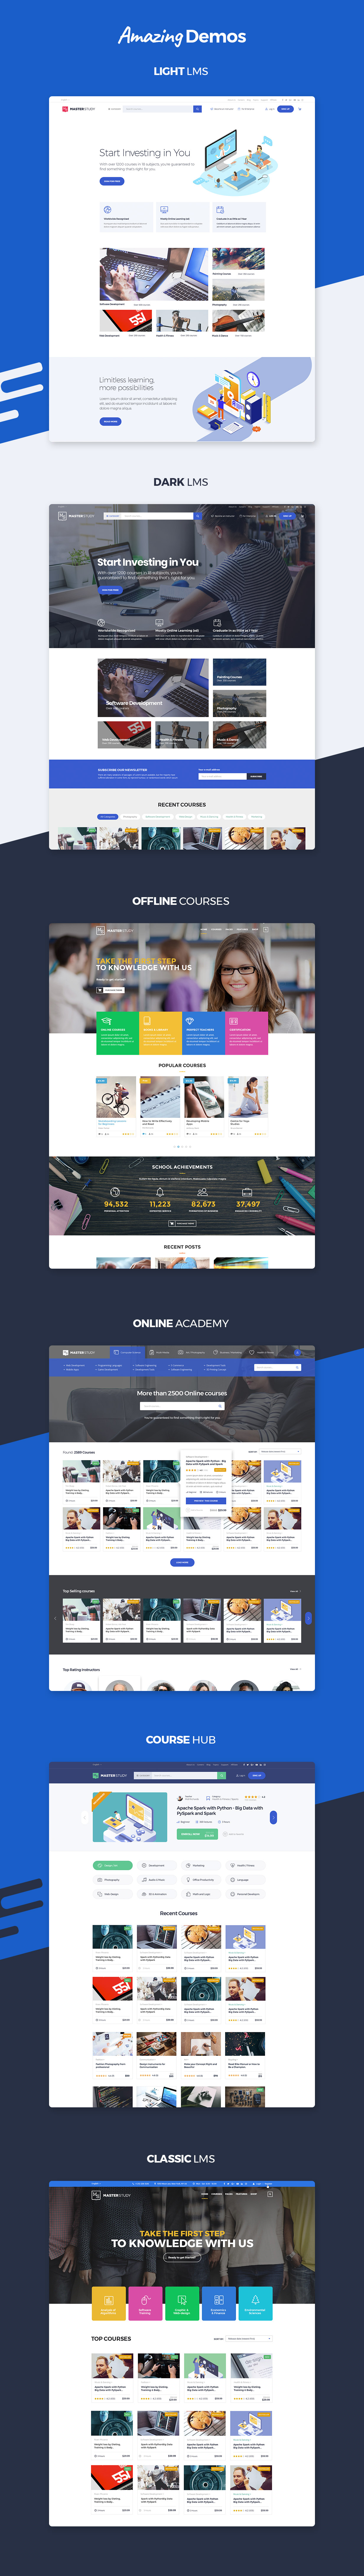 丰富多彩的在线教育的WordPress主题网站模板 Colorful Online Education WordPress Theme Website Template插图1